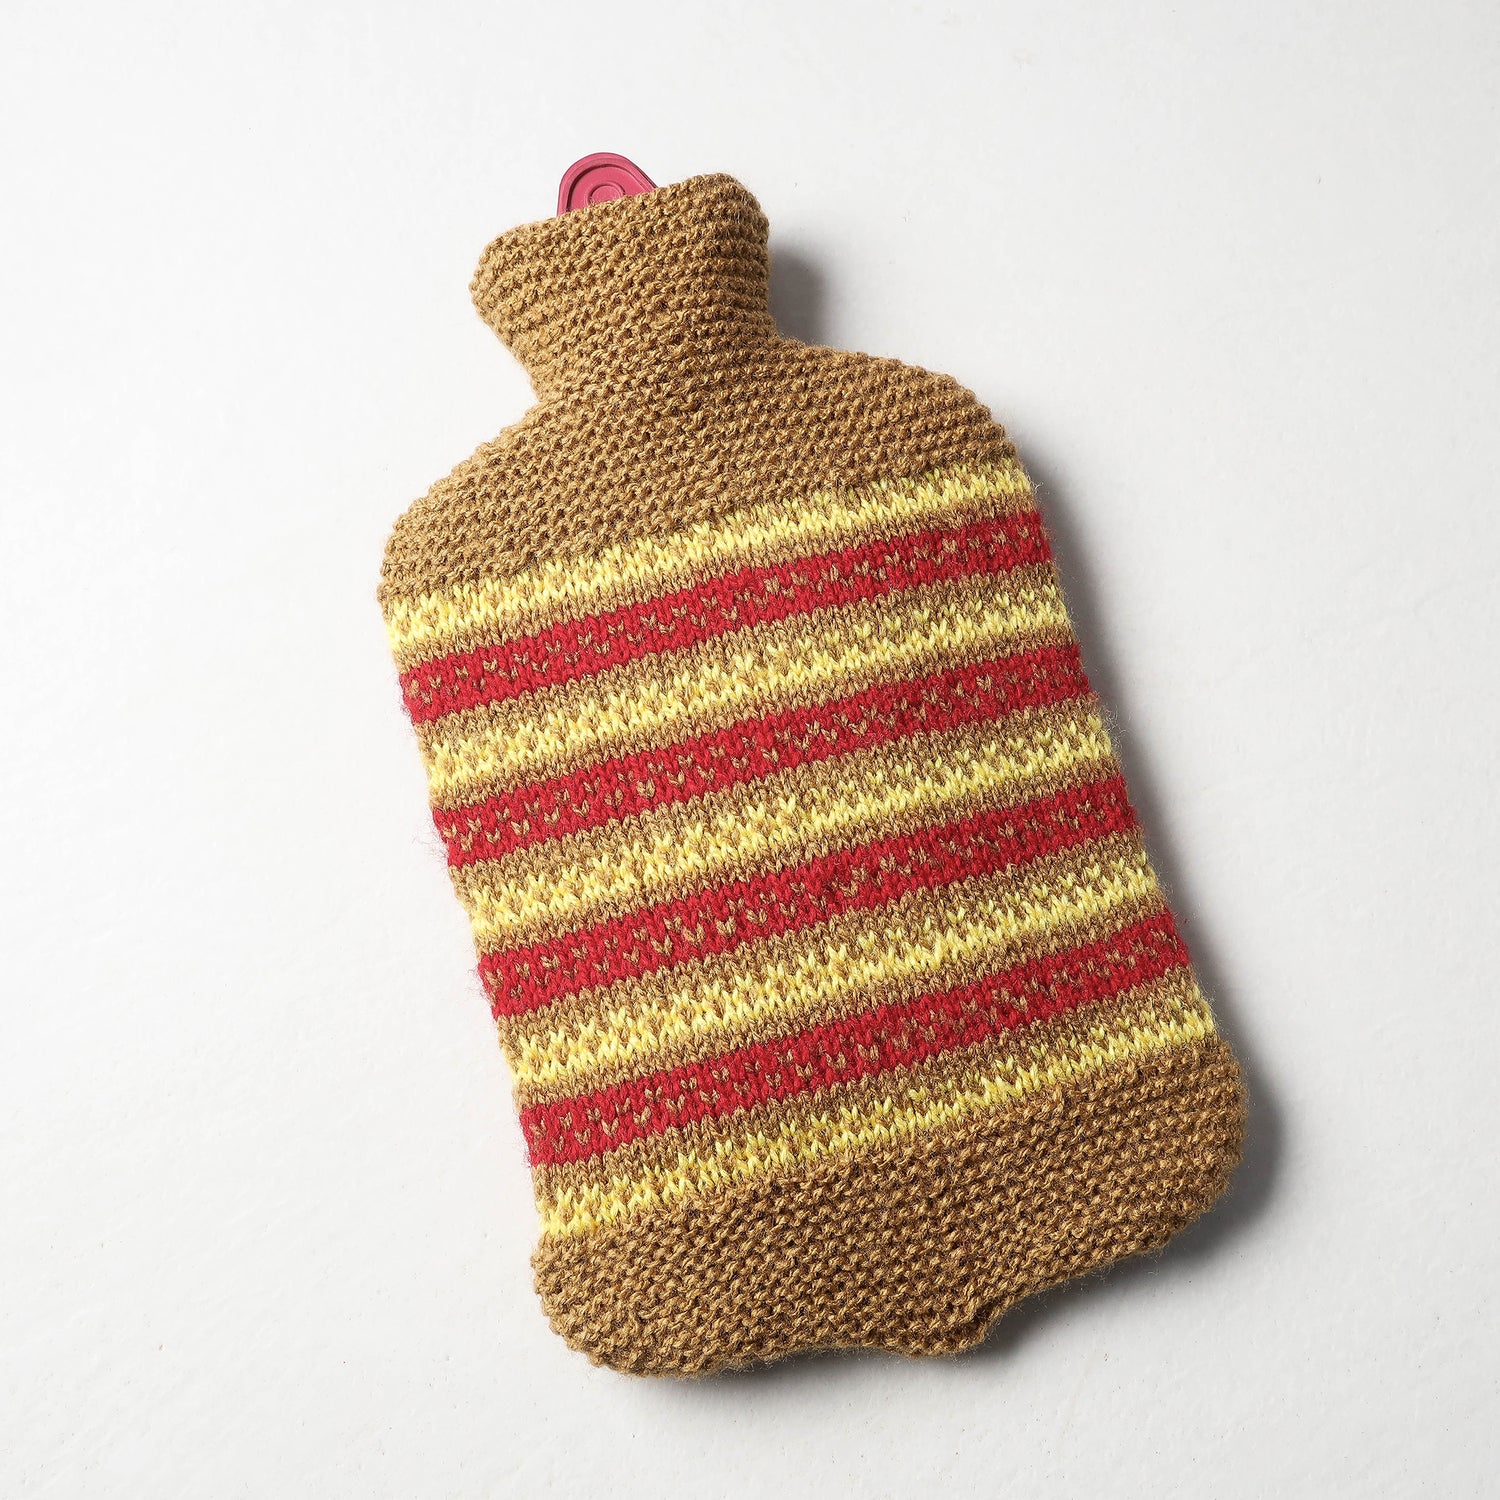 Kumaun Hand-knitted Woolen Hot Water Bottle Cover